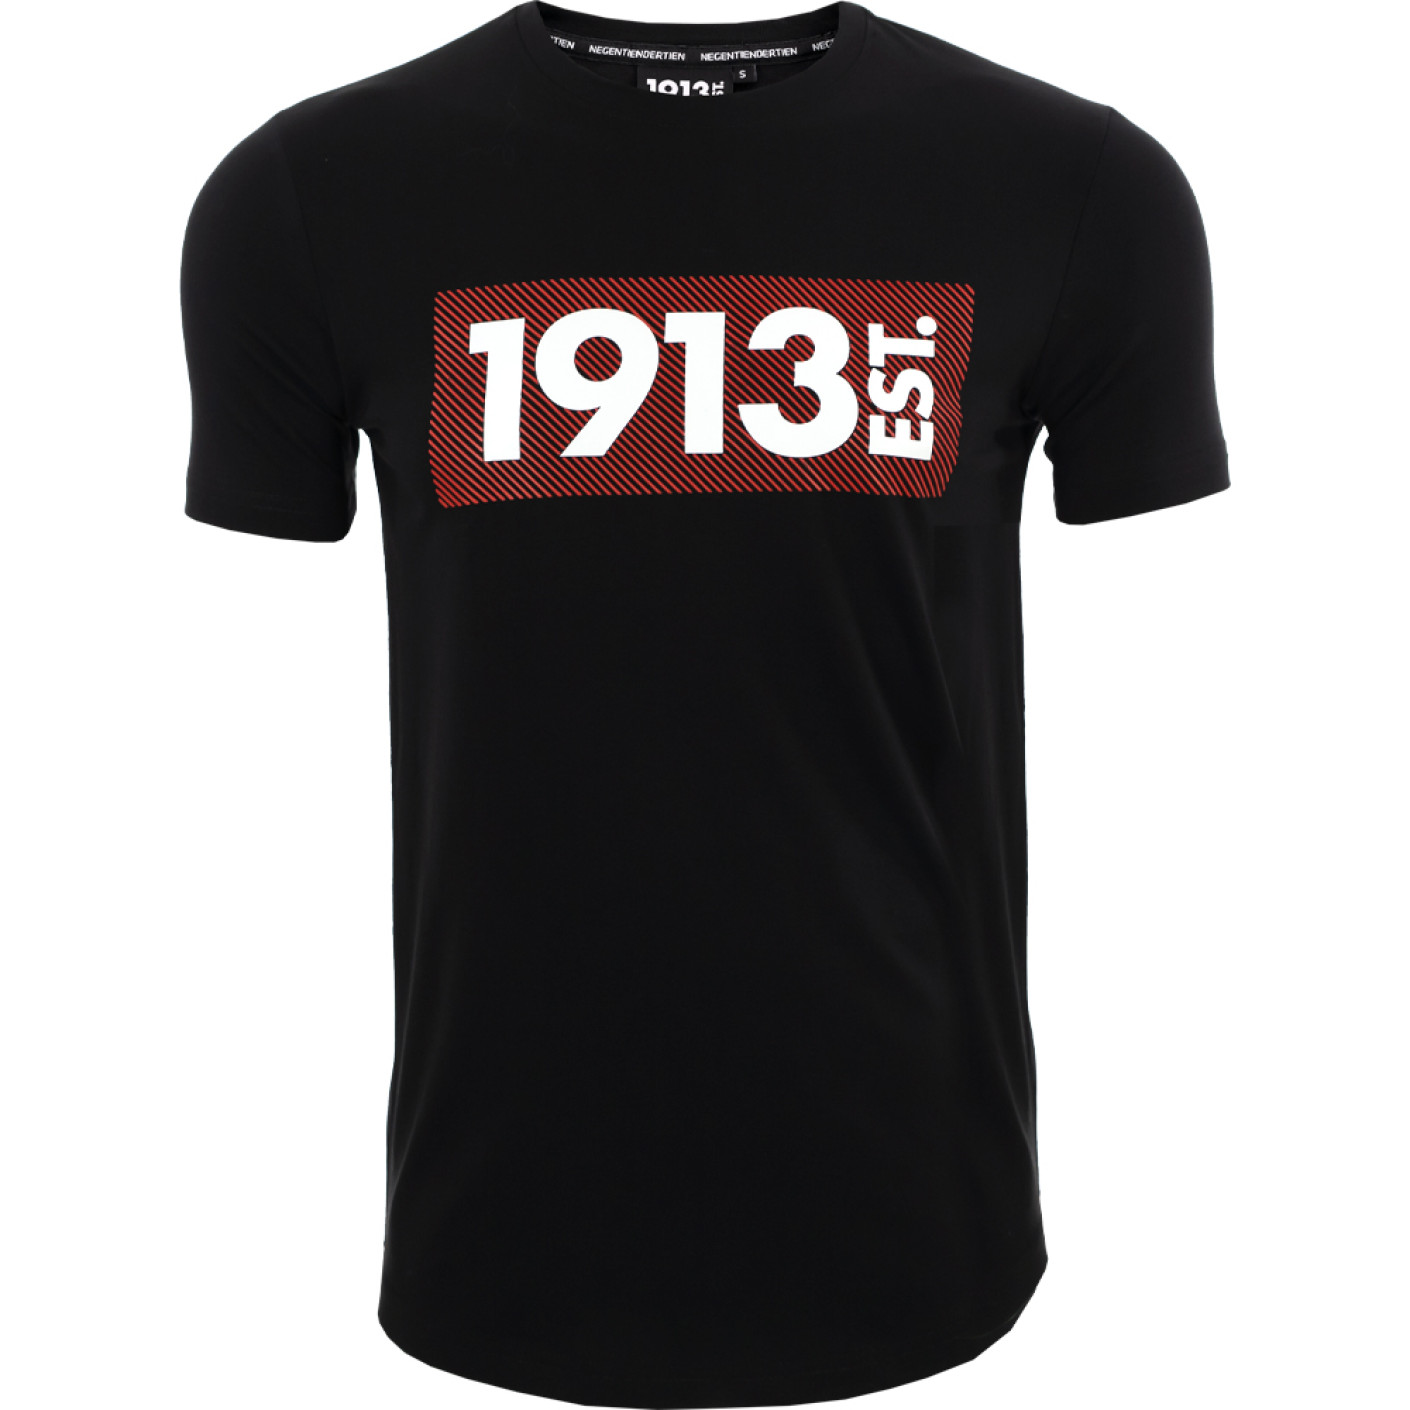 1913 T-shirt zwart Stripes rood